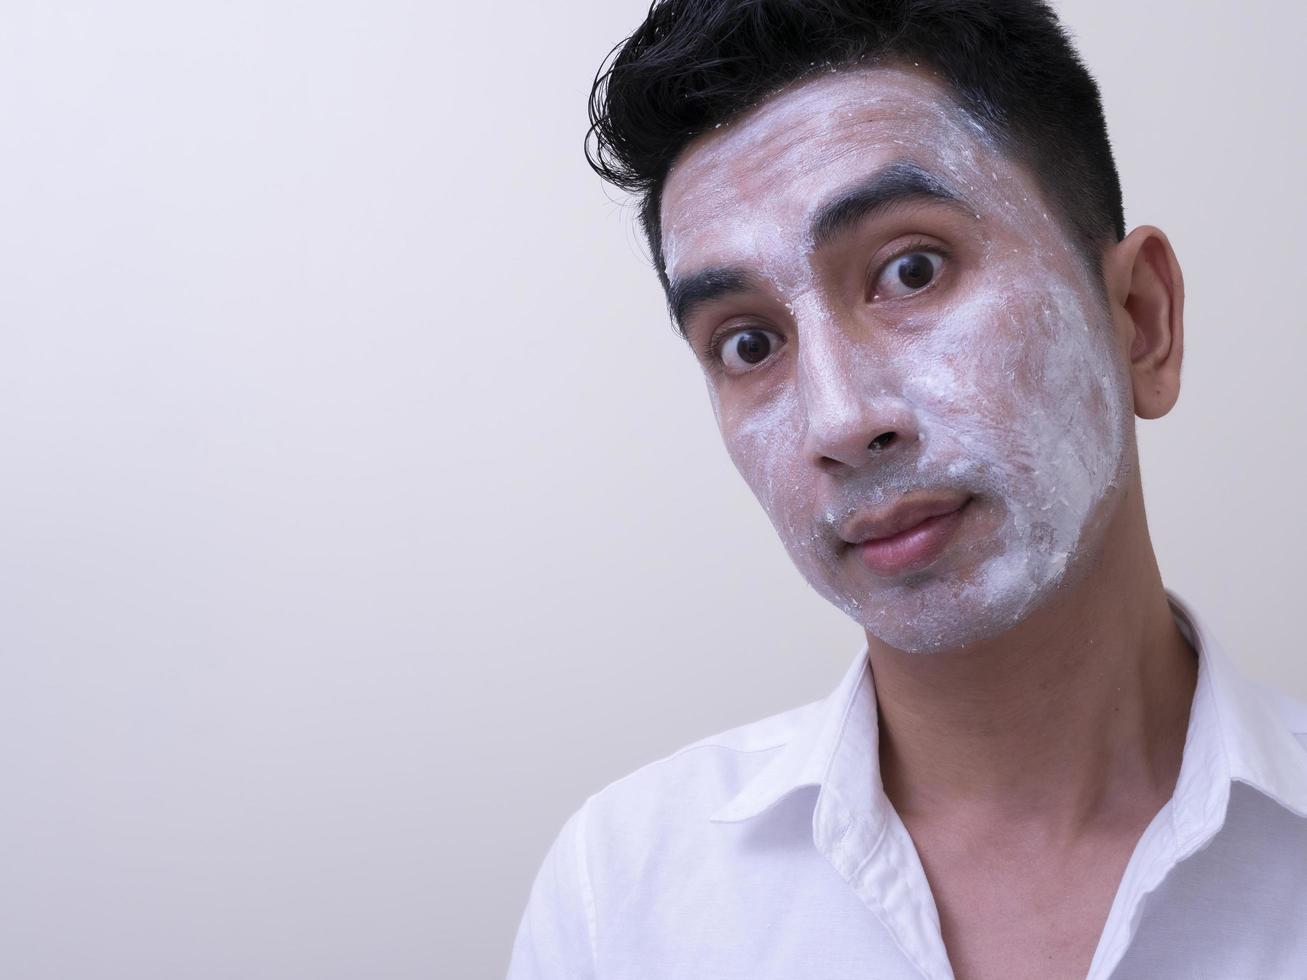 Aziatische knappe jongeman die crème op zijn gezicht aanbrengt met smileygezicht, huidverzorgingsconcept foto